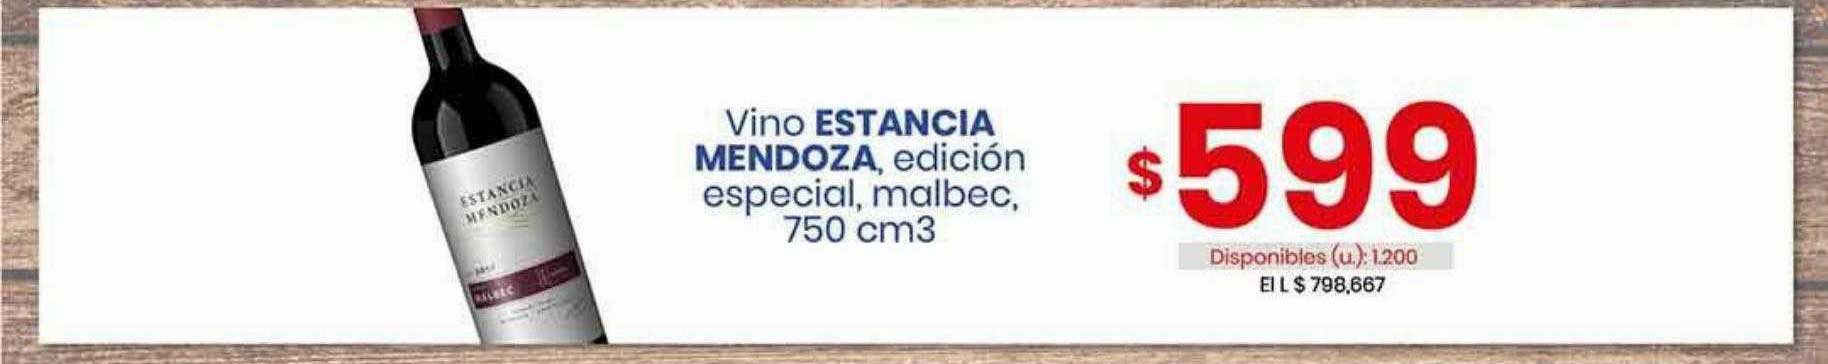 Cooperativa Obrera Vino Estancia Mendoza Edición Especial Malbec